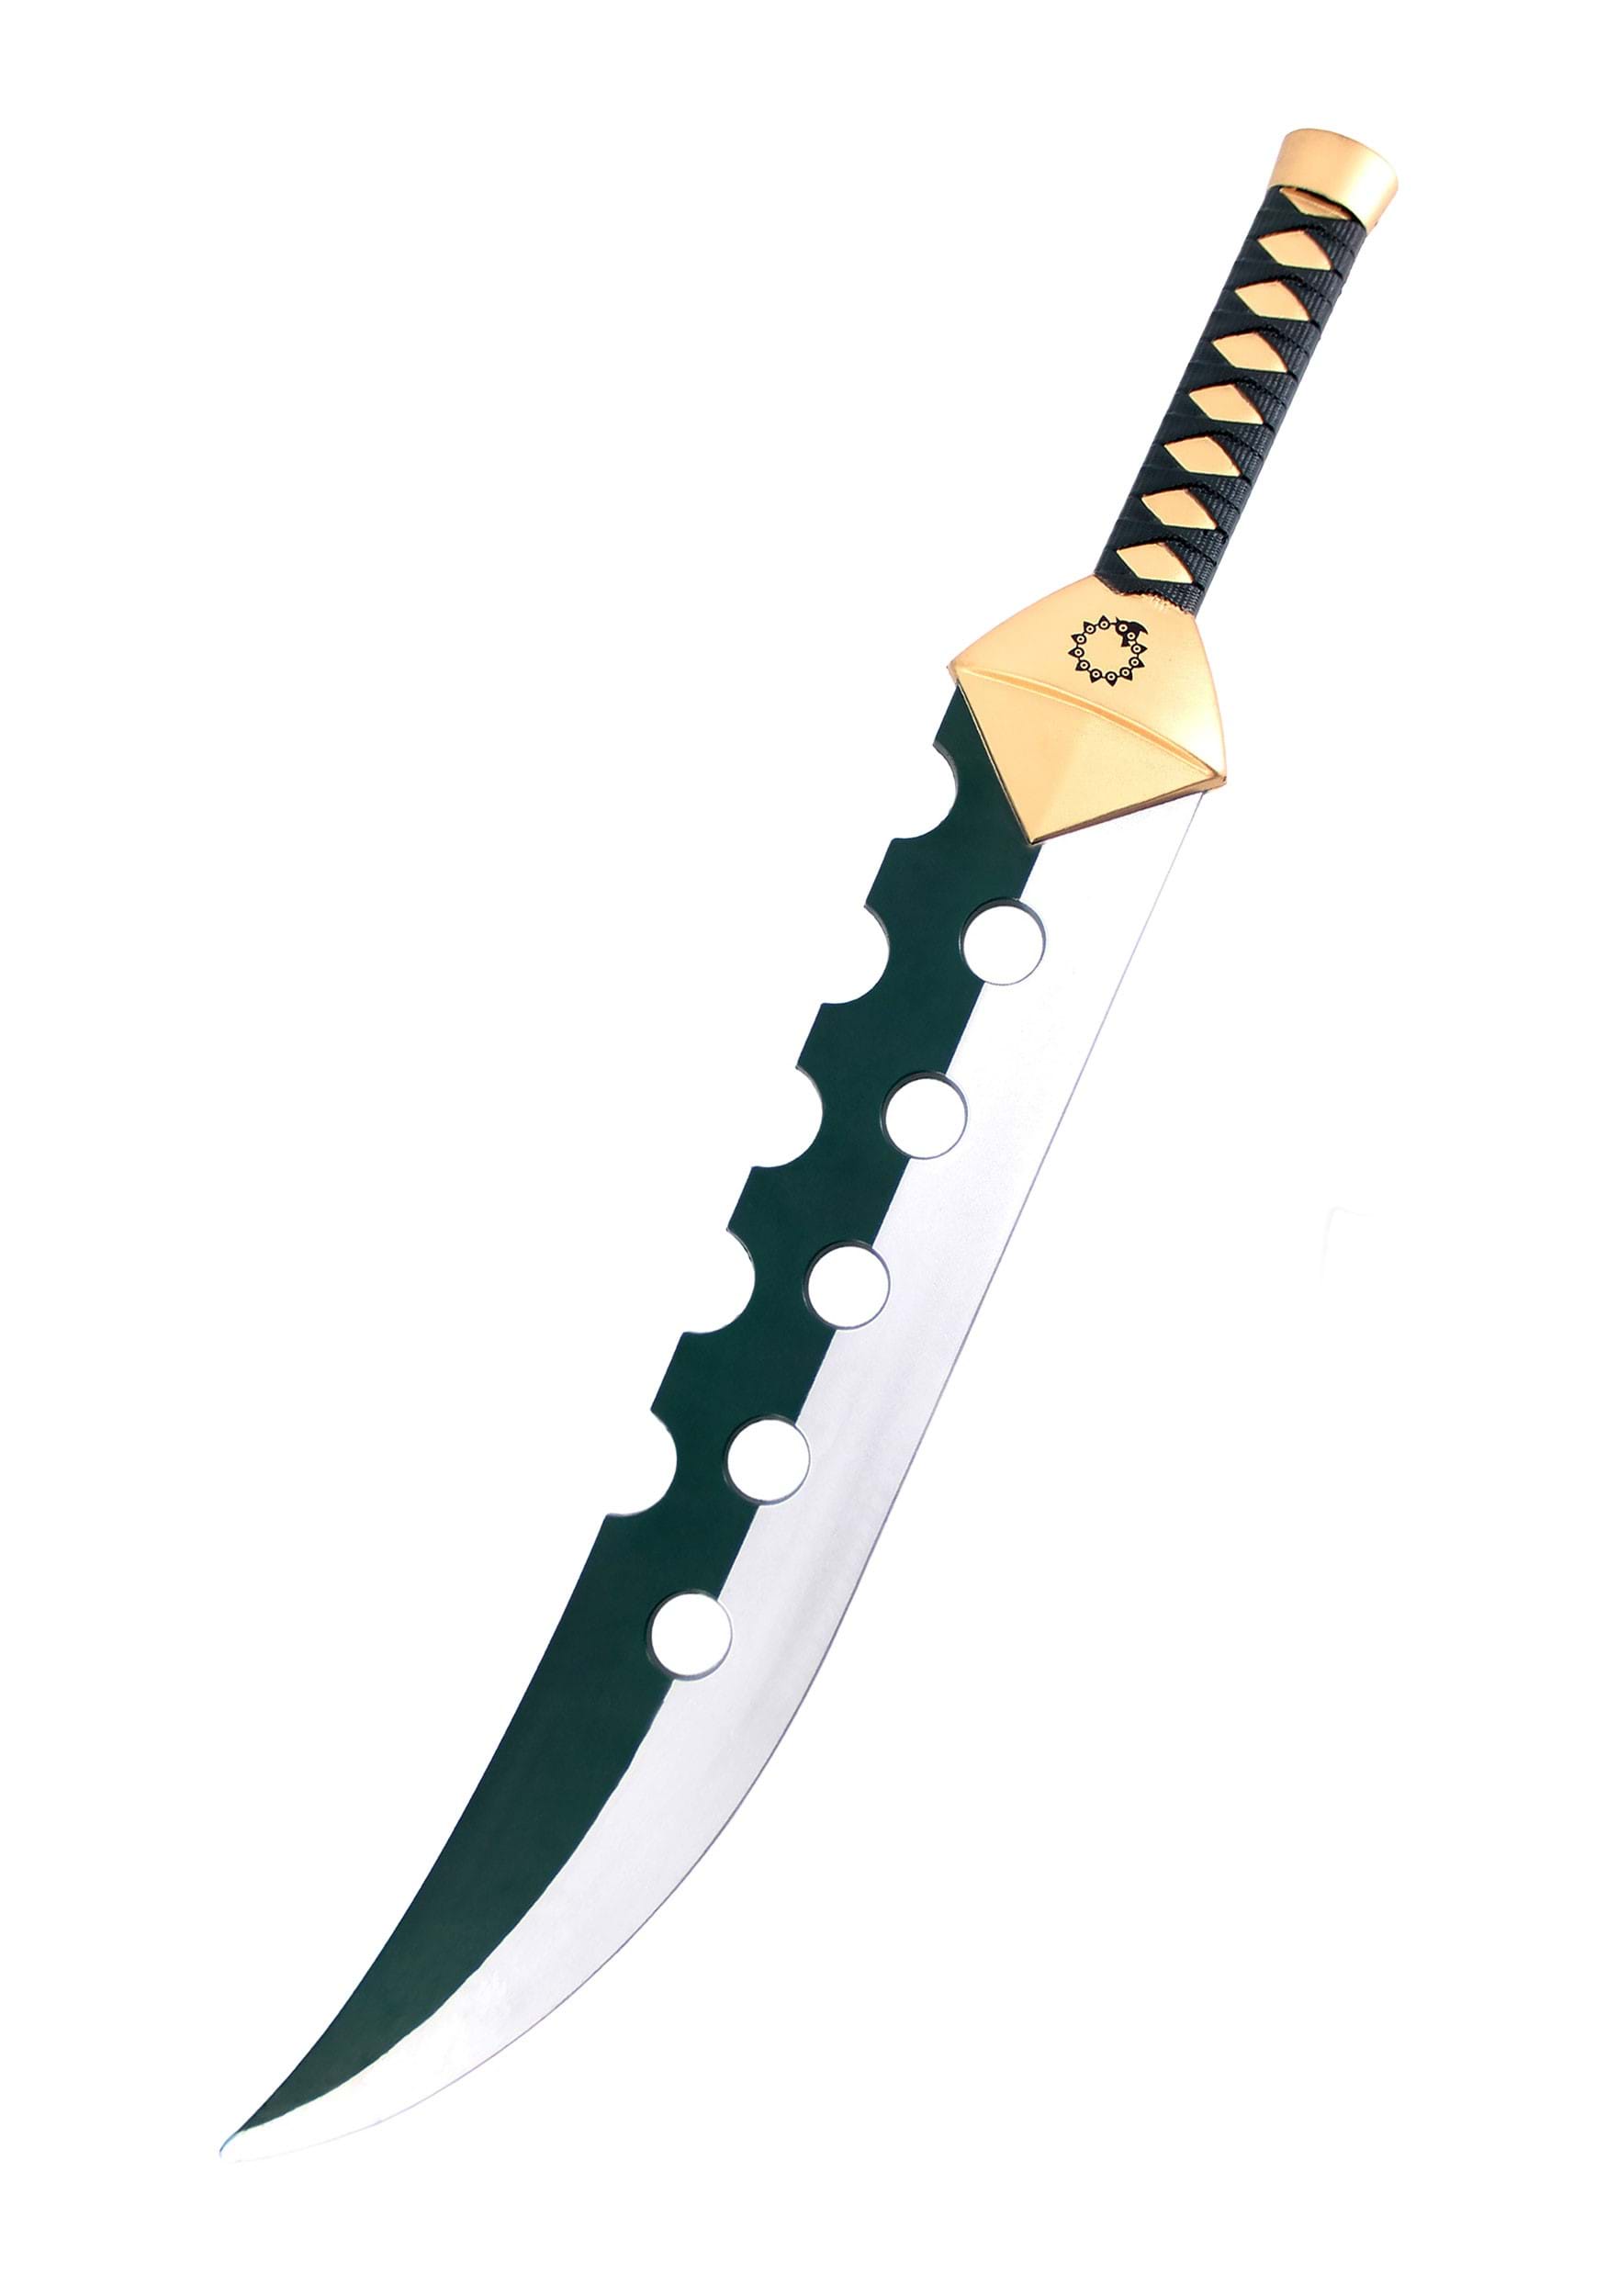 Anime Sword | Sword For Sale | Fantasy Sword – Battling Blades